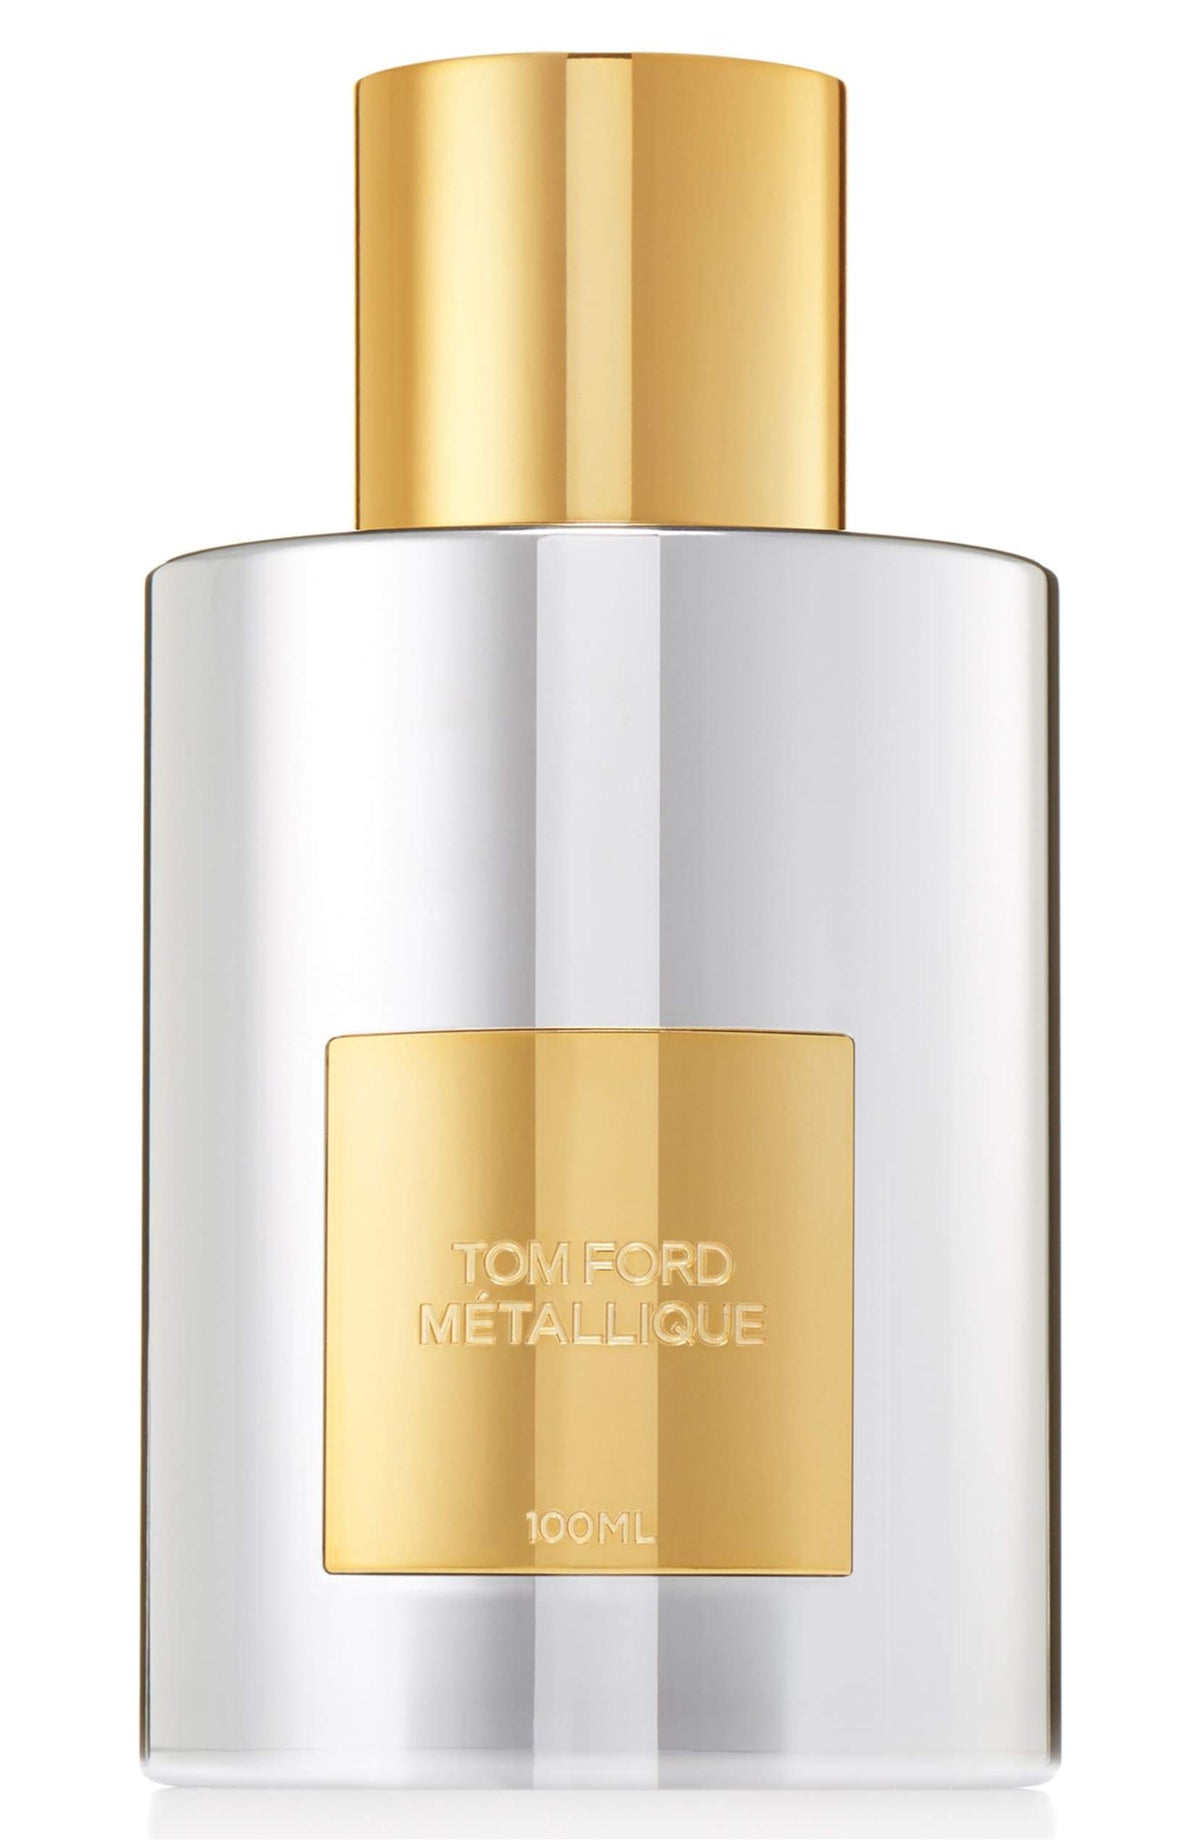 TOM FORD Métallique Eau de Parfum Spray 3.4 oz - eCosmeticWorld